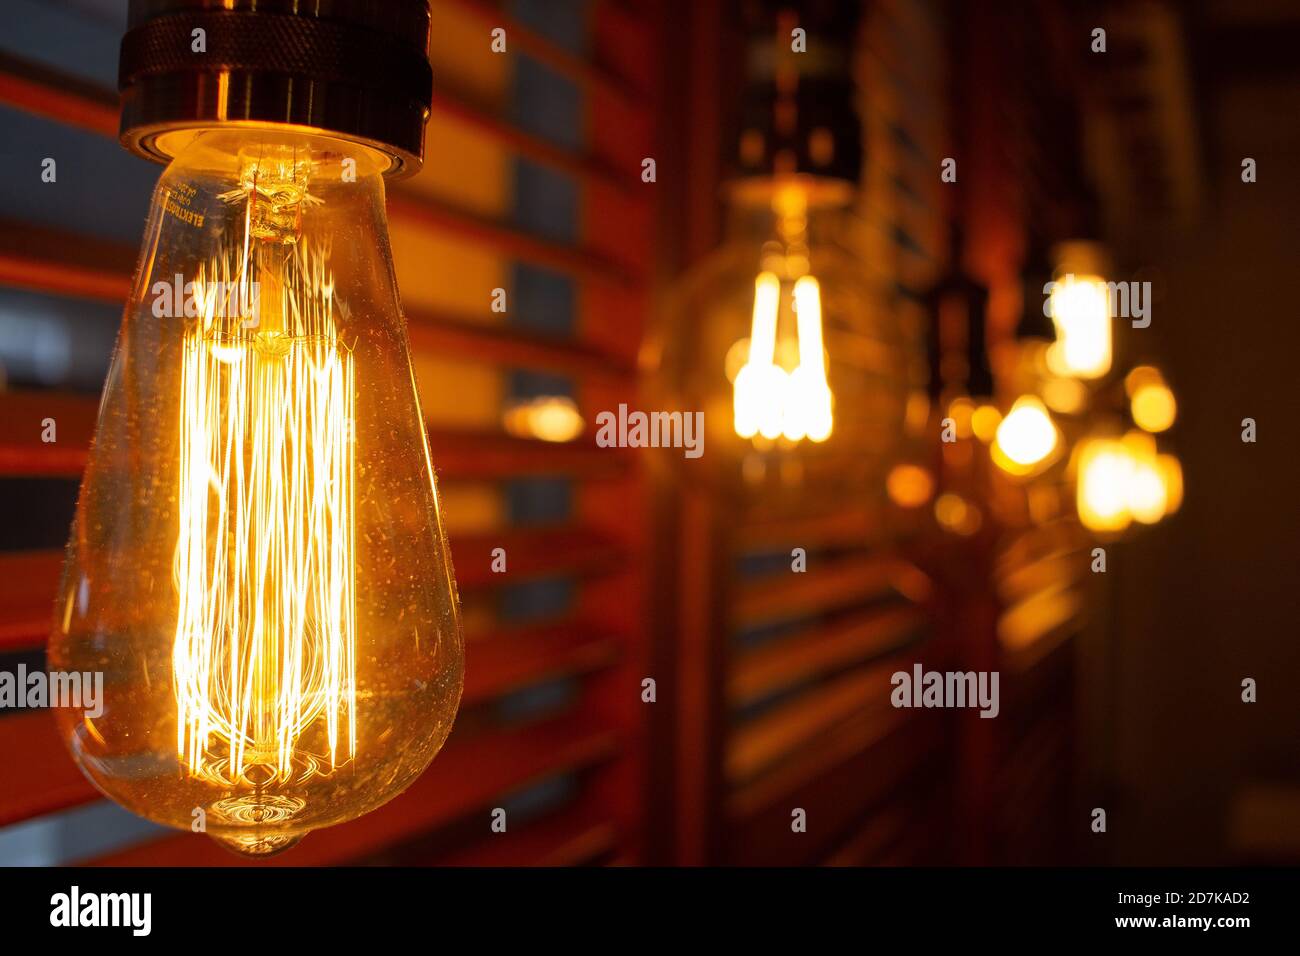 Lámparas antiguas doradas de estilo Edison en la oscuridad. Concepto de decoración de iluminación. Bombilla de época. Fondo difuminado de luces retro Foto de stock